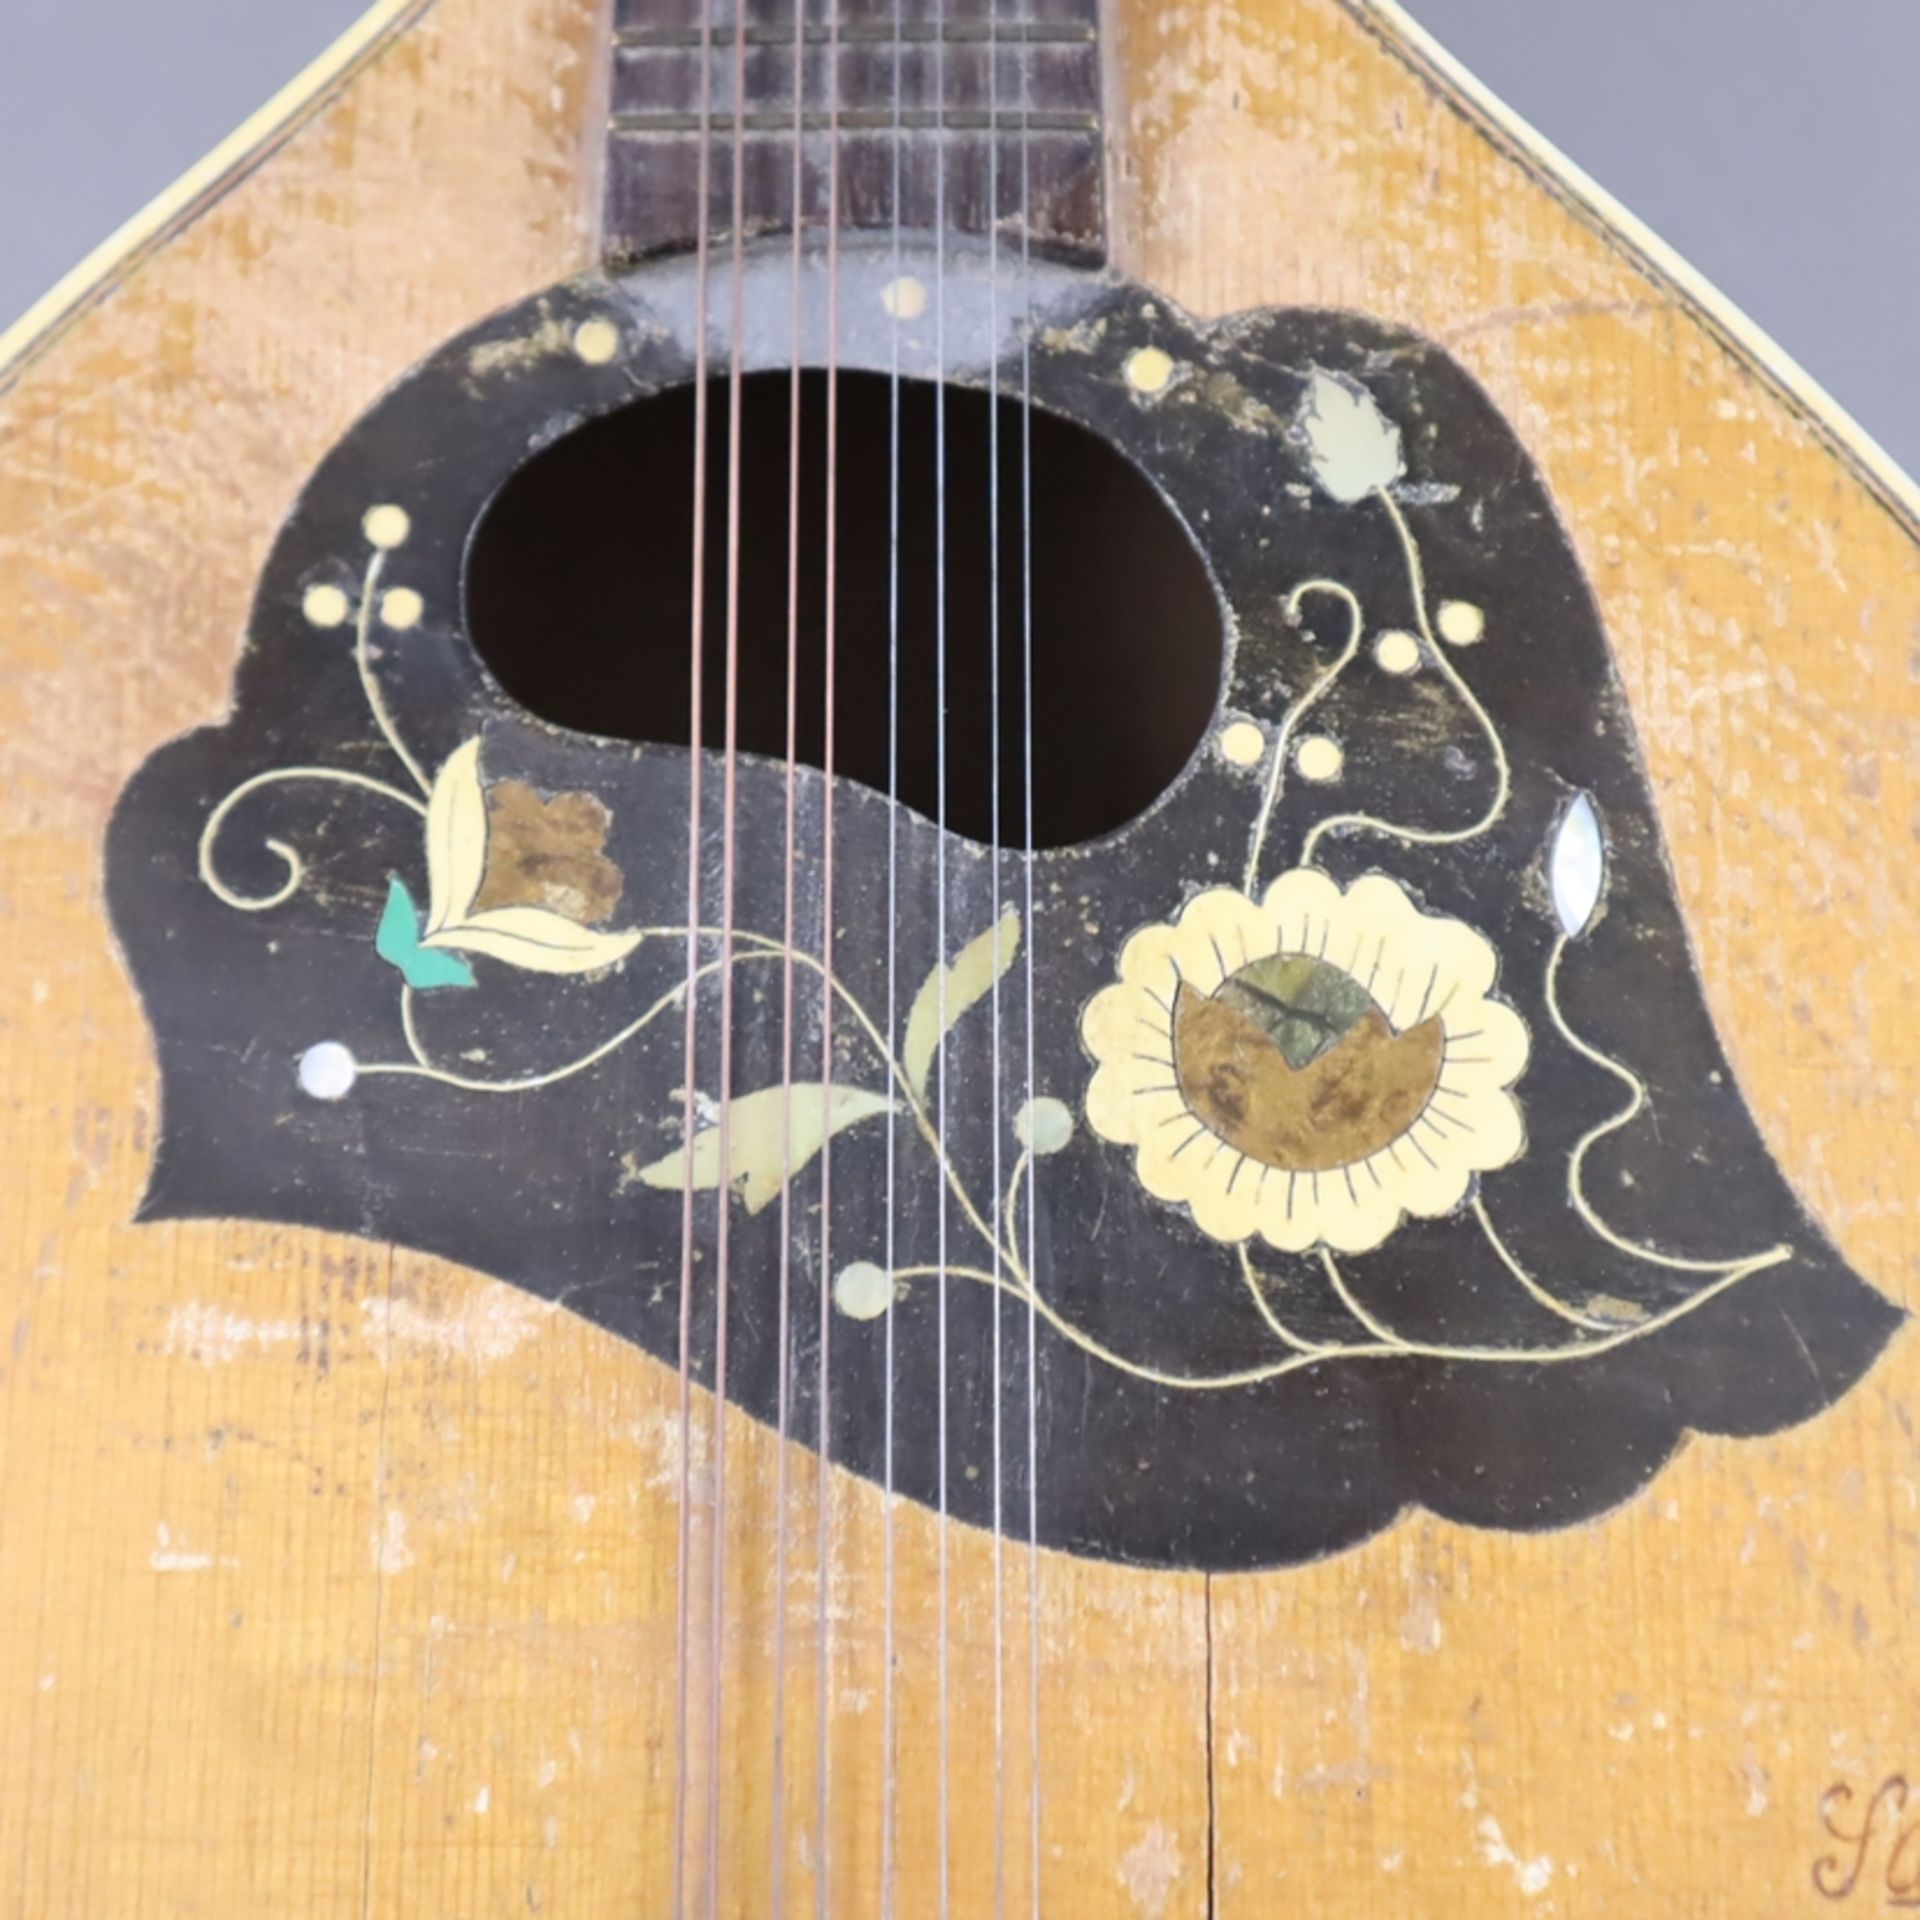 Zwei Mandolinen / Waldzither - deutsch, 1x gestempelt "Sampo", Schallloch mit floral intarsierter E - Bild 5 aus 9